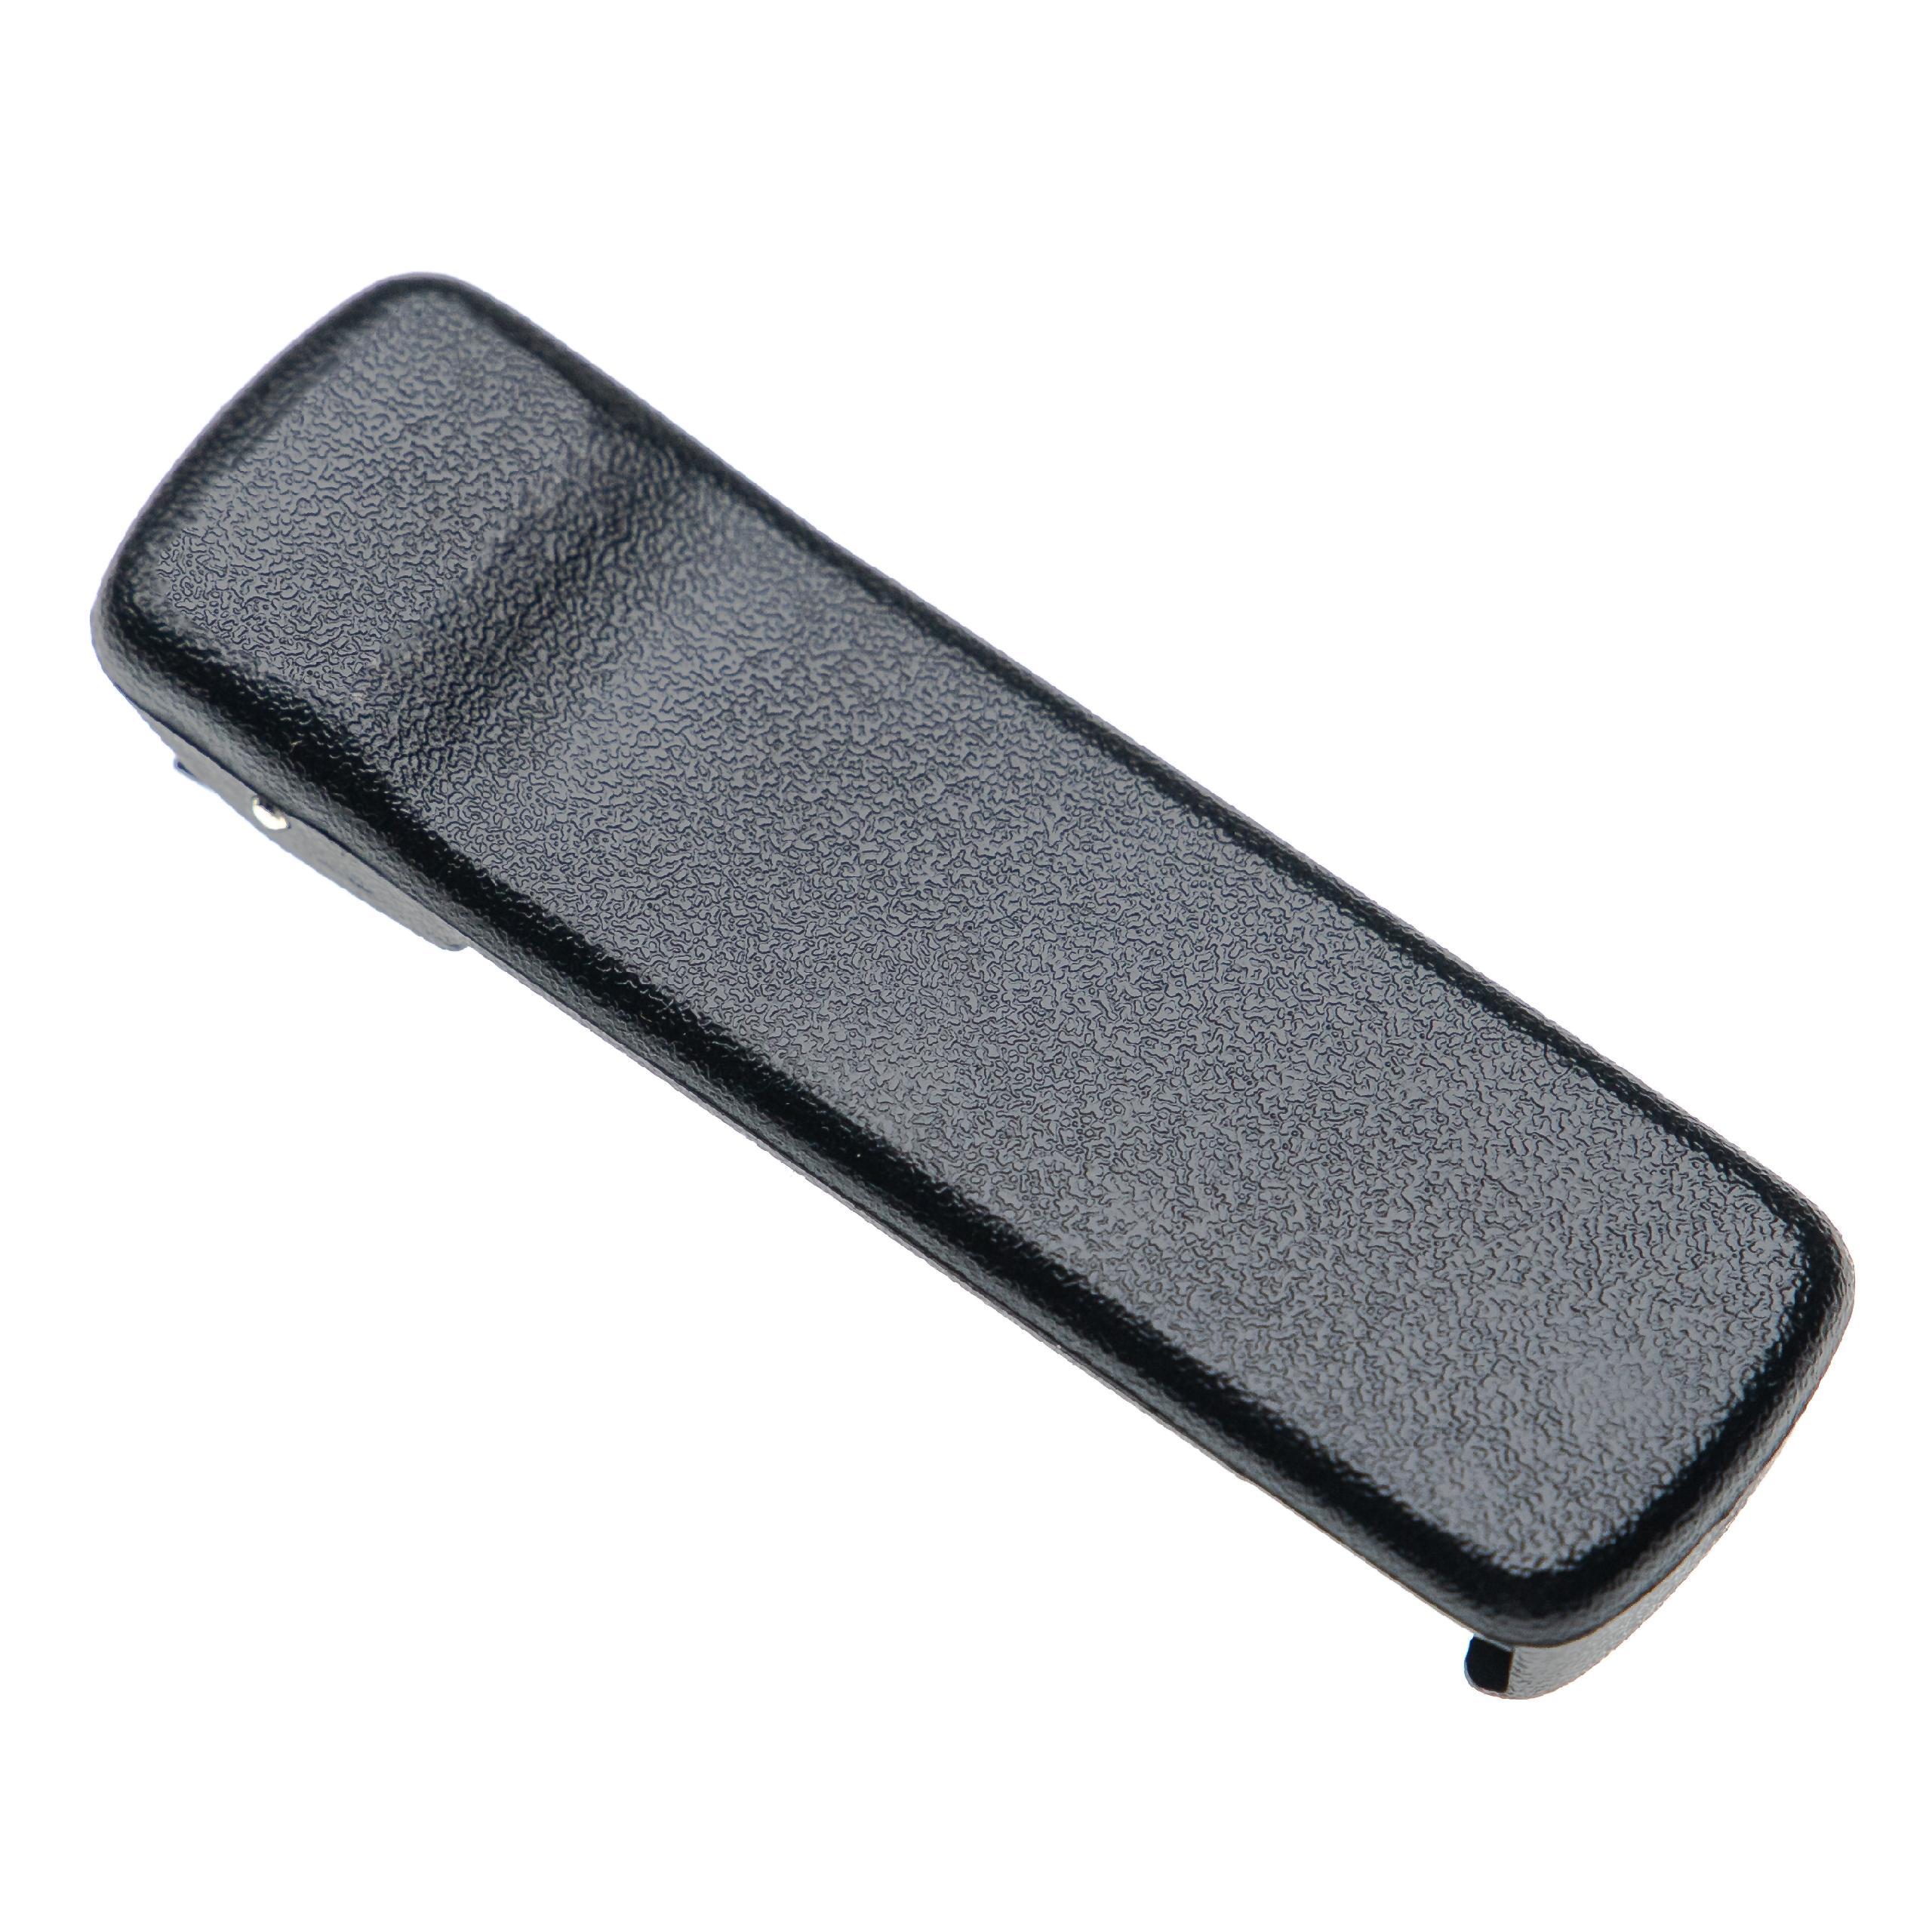 Gürtelclip als Ersatz für Motorola HLN8255 Funkgerät - Kunststoff, Schwarz